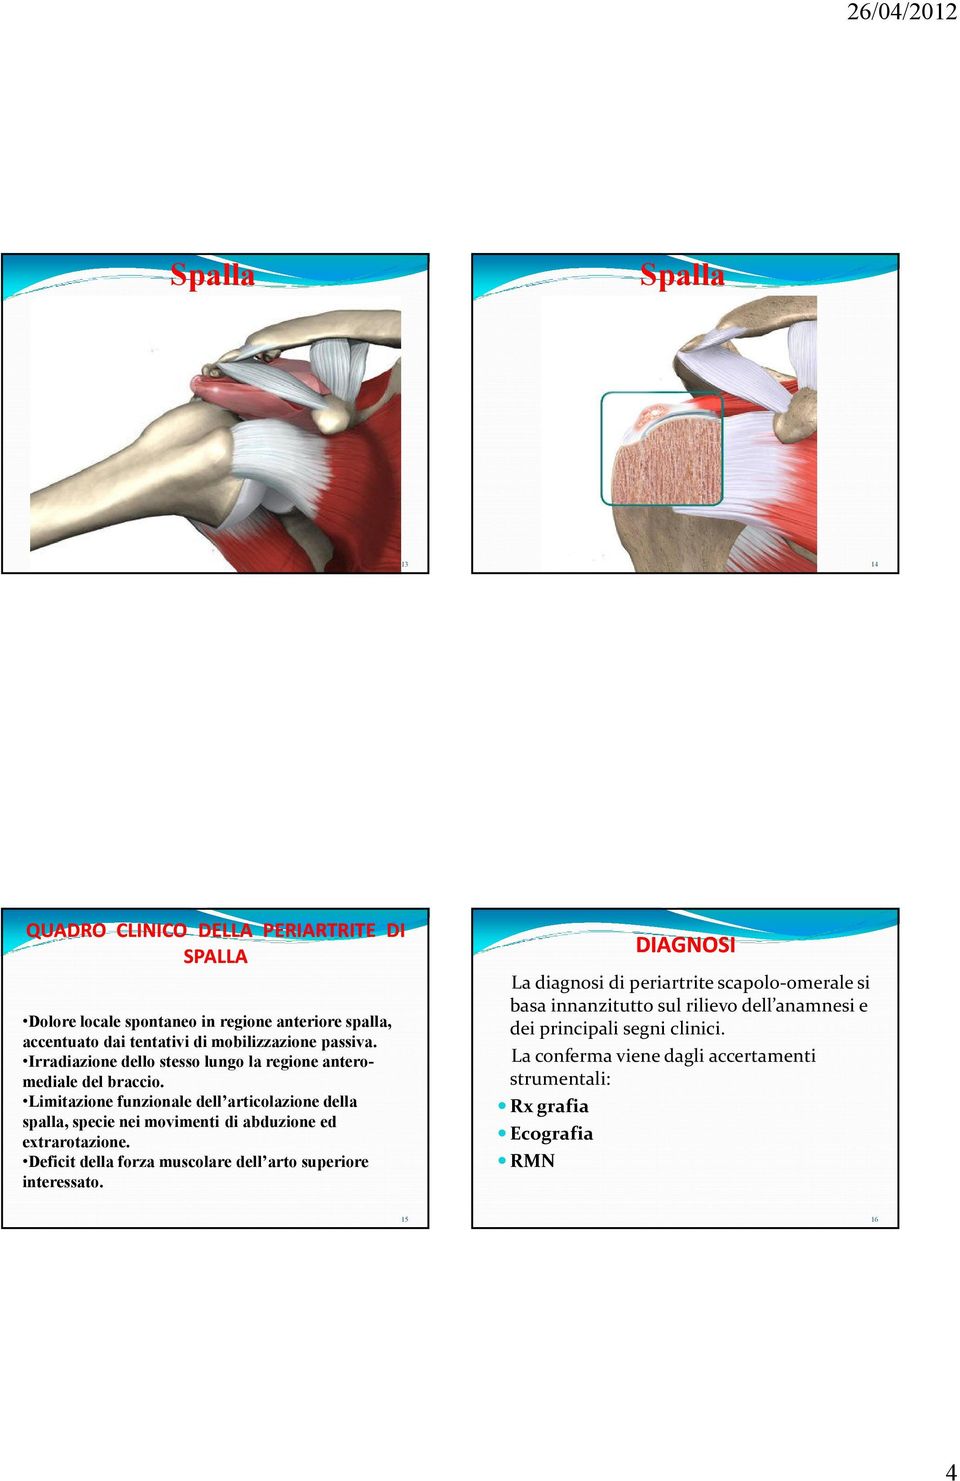 Limitazione funzionale dell articolazione della spalla, specie nei movimenti di abduzione ed extrarotazione.